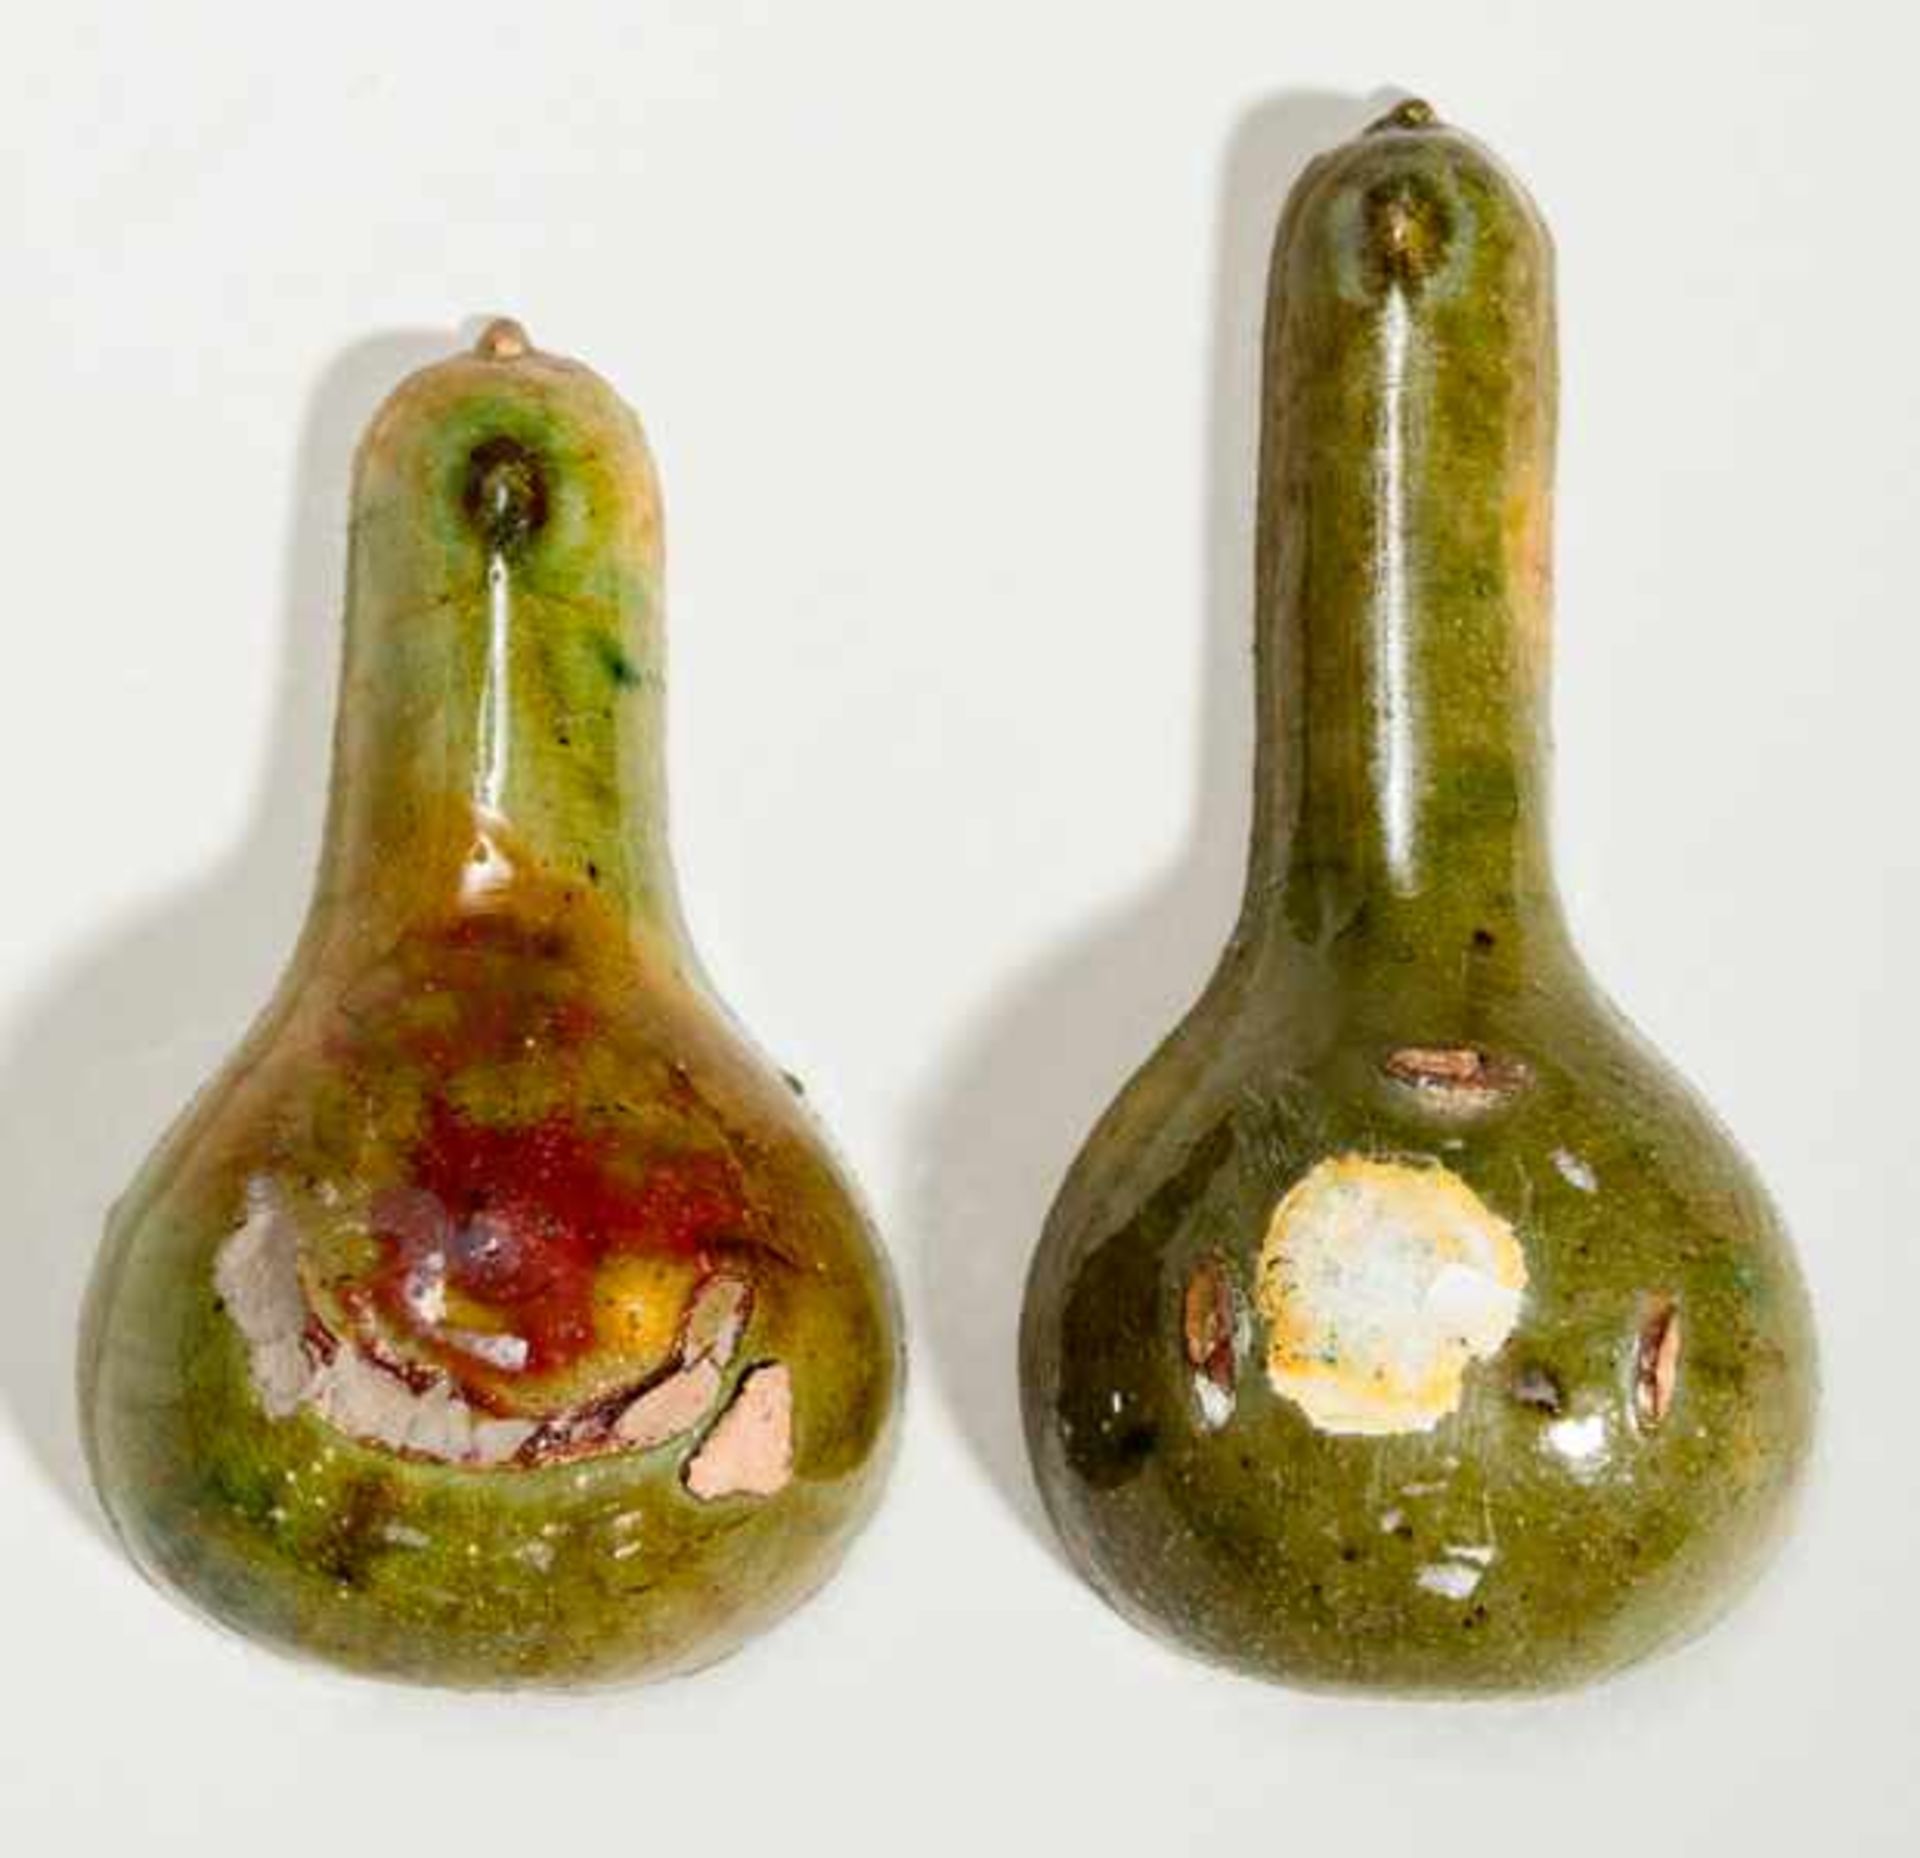 TWO SPOONS Glazed ceramic. China, Han dynasty (206 BCE - 220 CE)兩支陶勺A remarkably beautiful glaze - Bild 2 aus 2